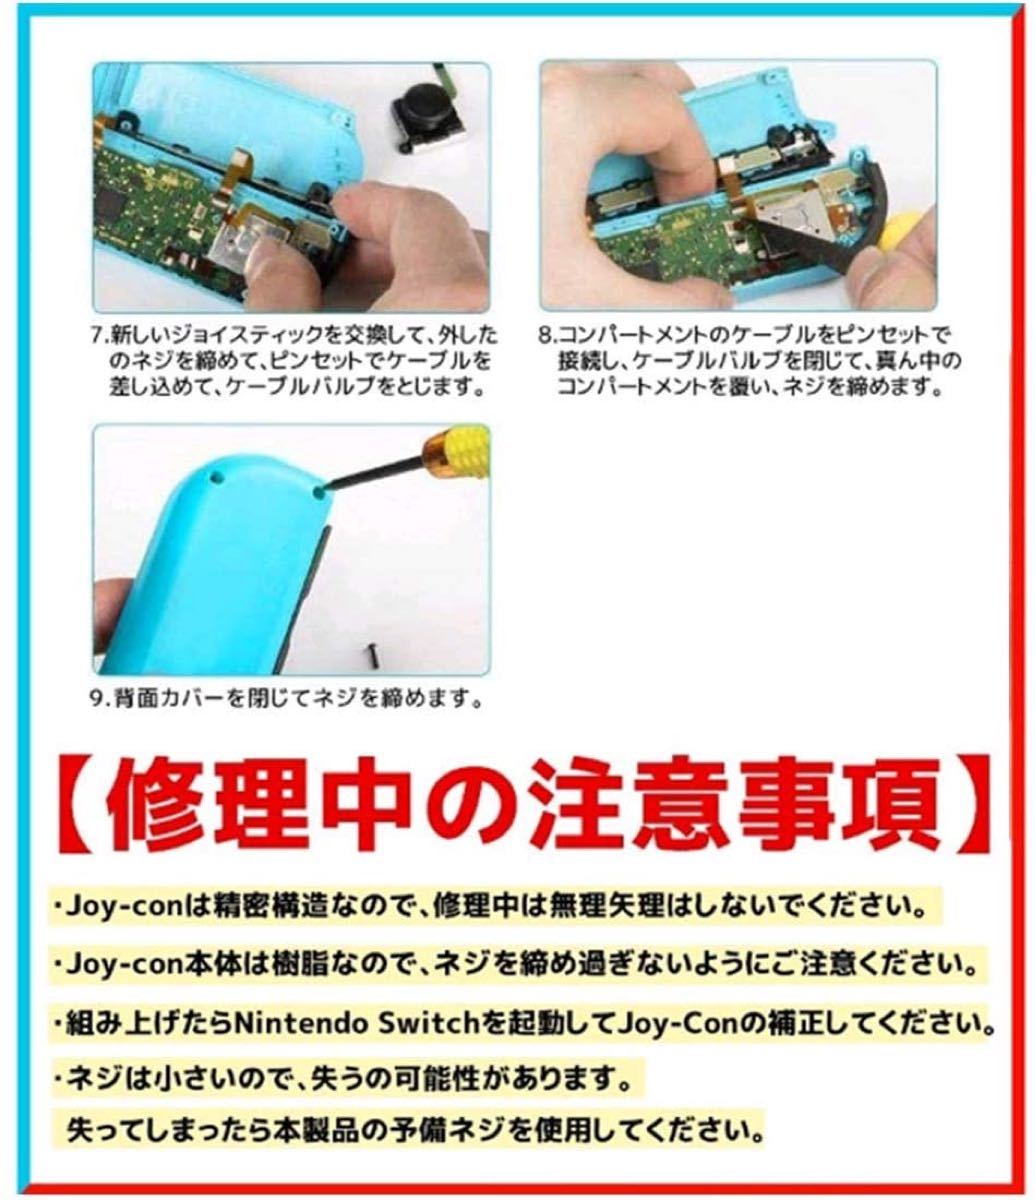 Switch NS Joy-con対応 コントロール 右／左センサー2個第四世代